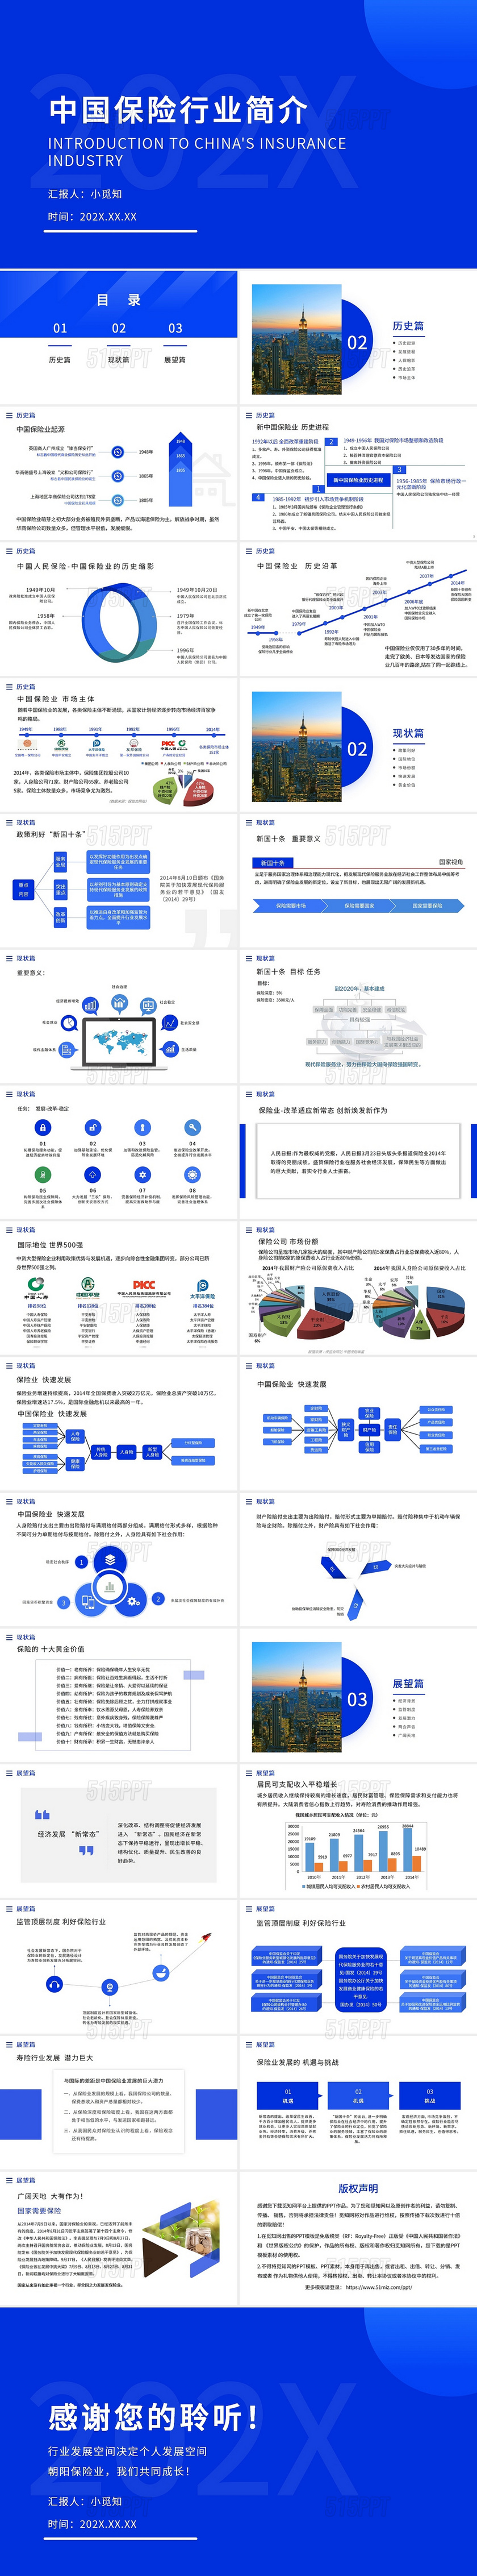 蓝色大气简约中国保险行业介绍PPT模板